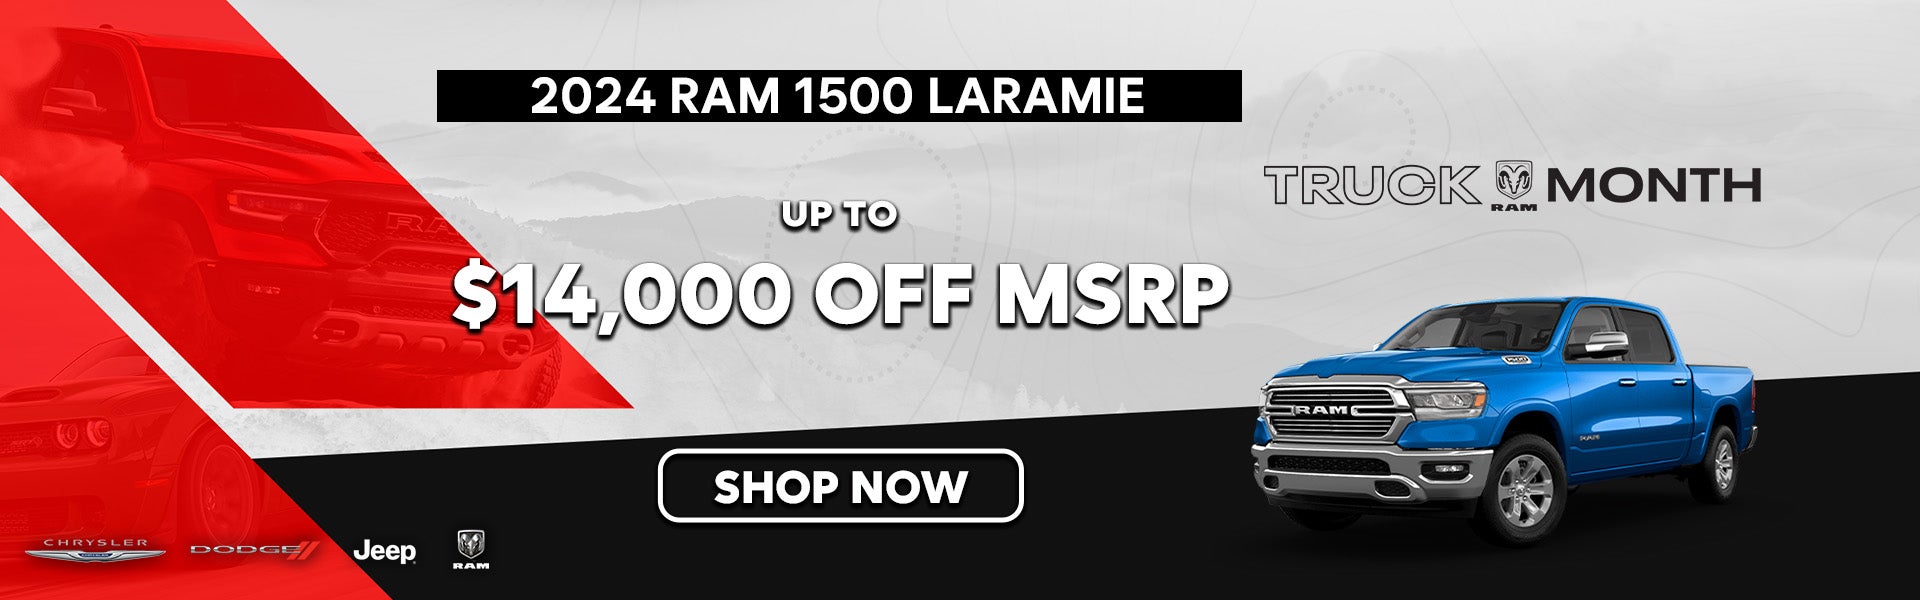 2024 Ram 1500 Laramie Special Offer